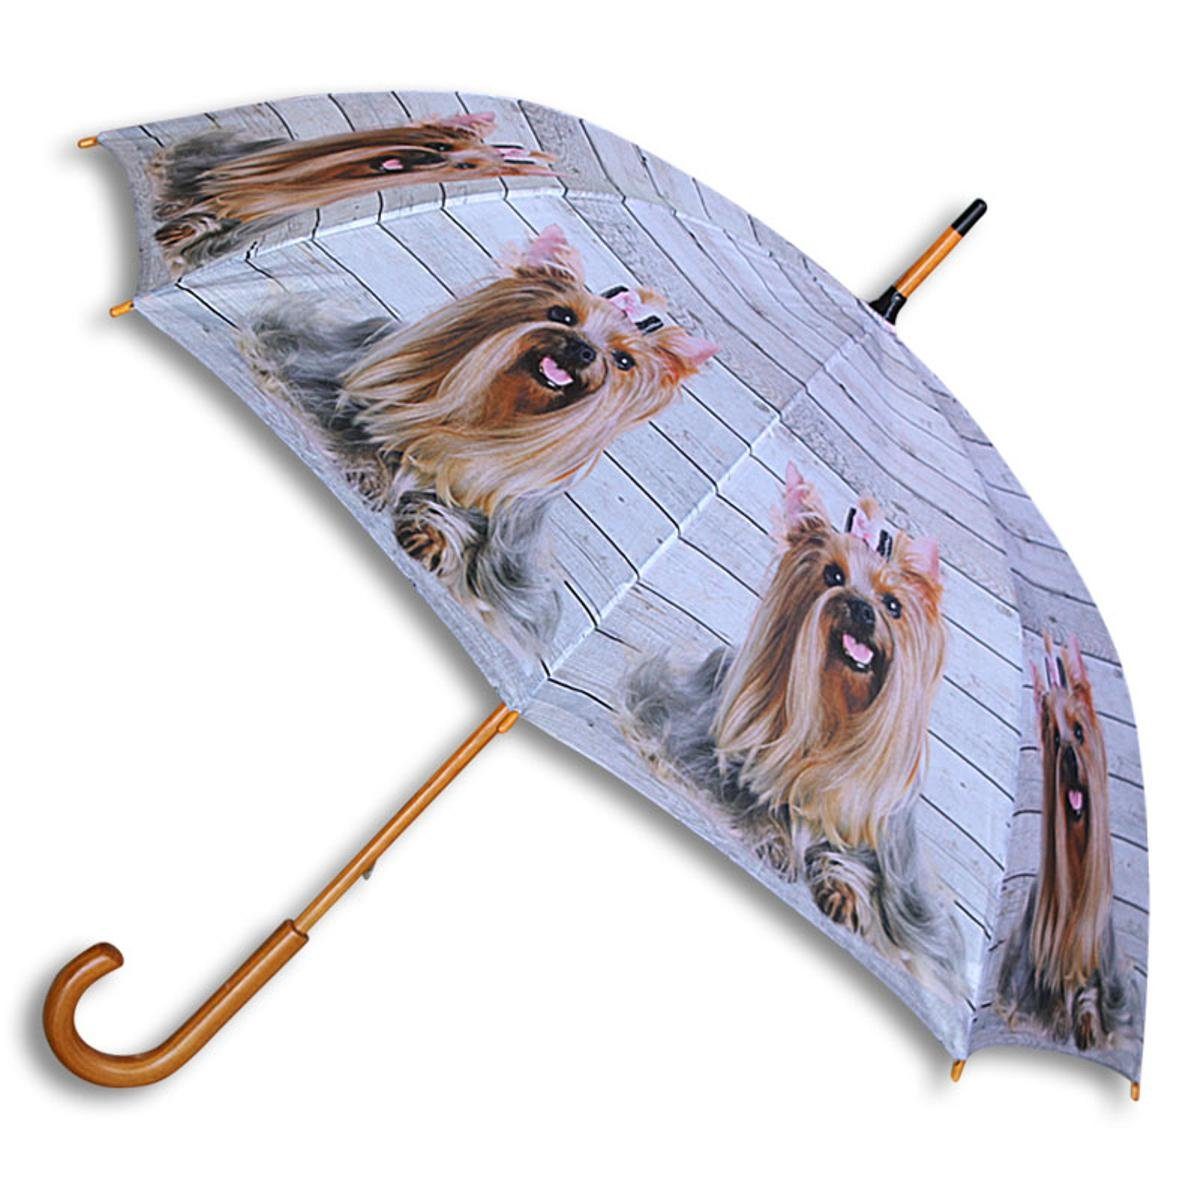 & Regenschirm & Mars Yorkshire More More Mädchen Mars Stockregenschirm